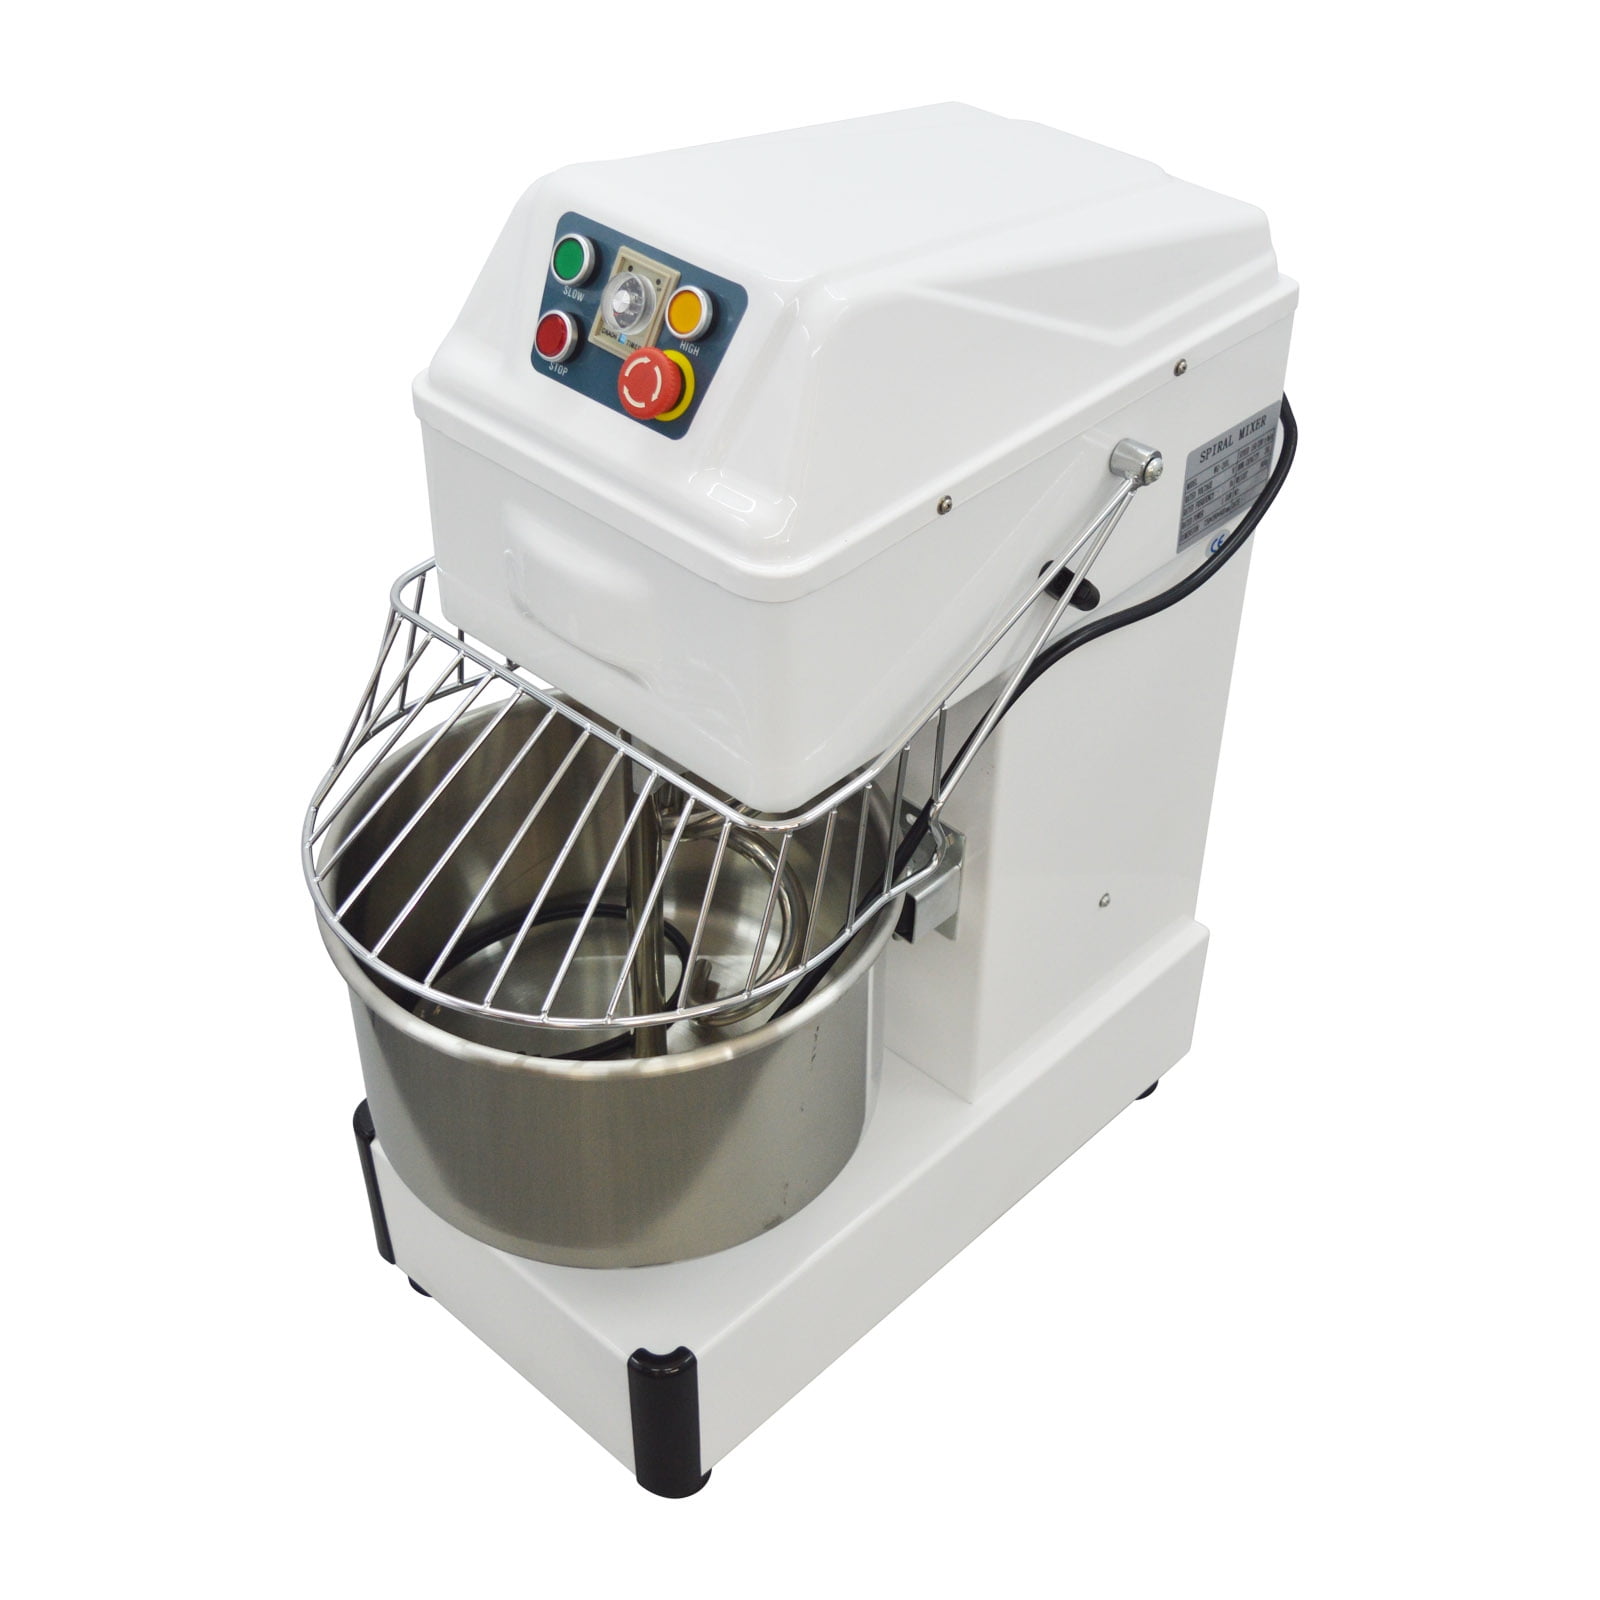 Batidora Industrial Food Mixer Machine Bakery Electric Dough Mixer Prices -  China Small Dough Mixer and 25kg Dough Mixer price